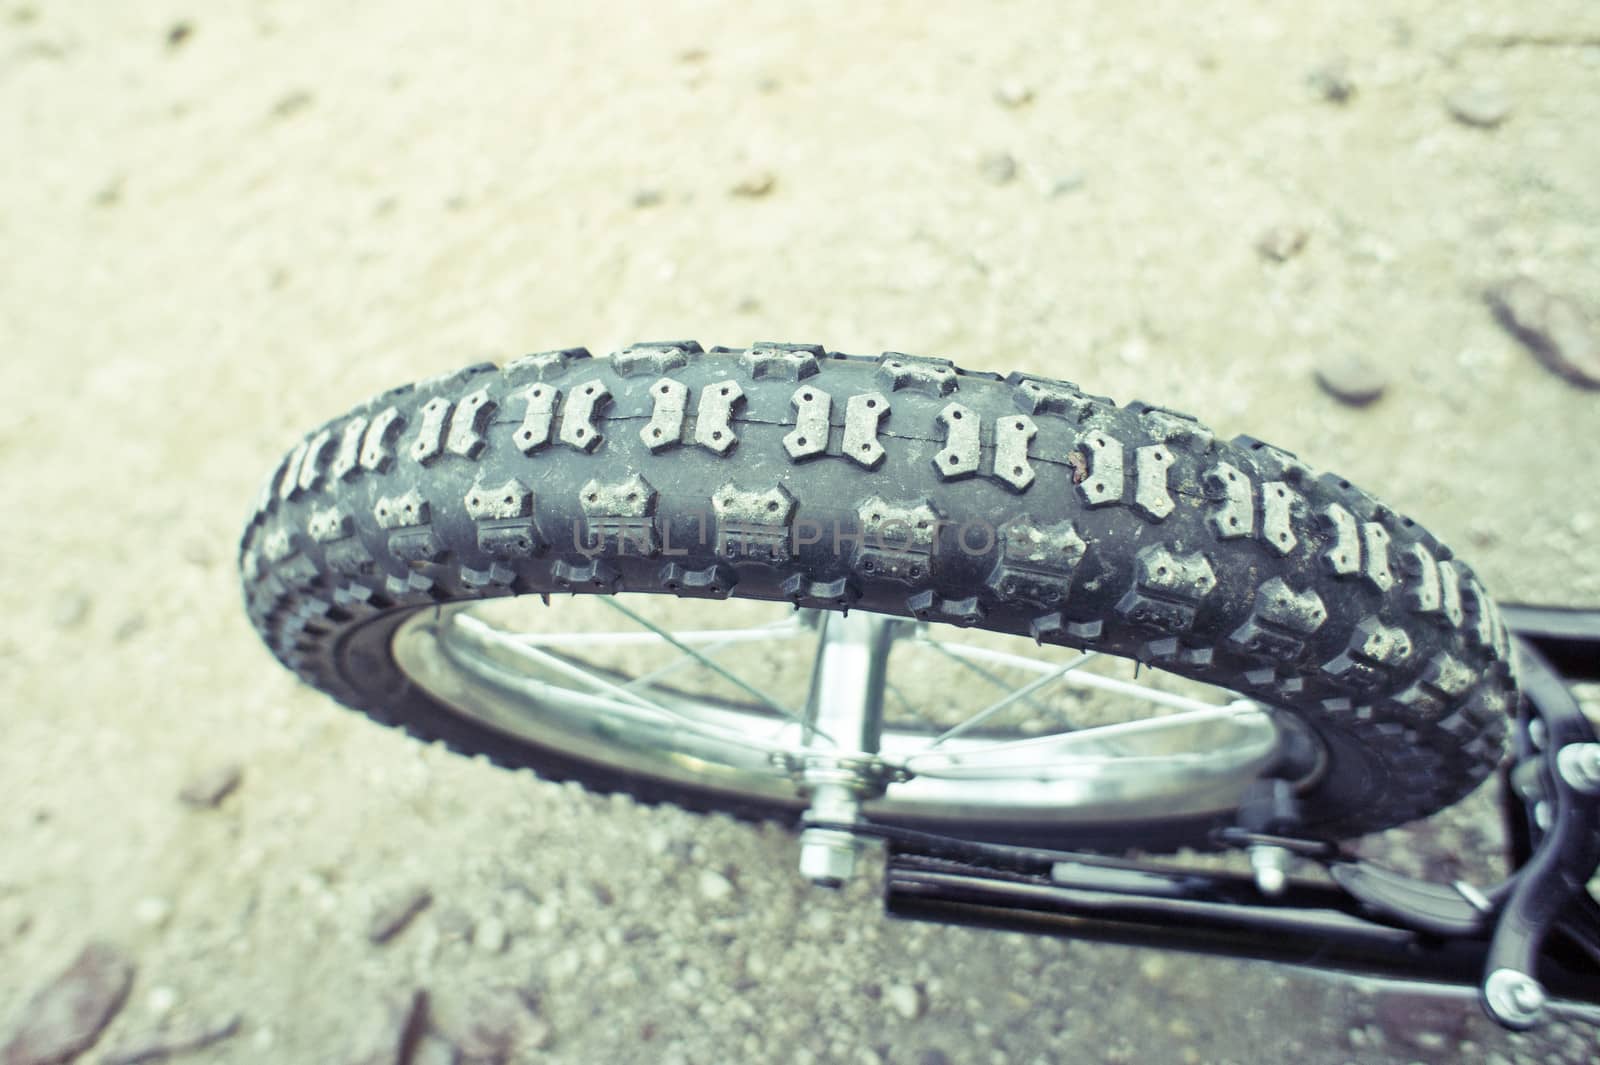 Bike tyre by trgowanlock